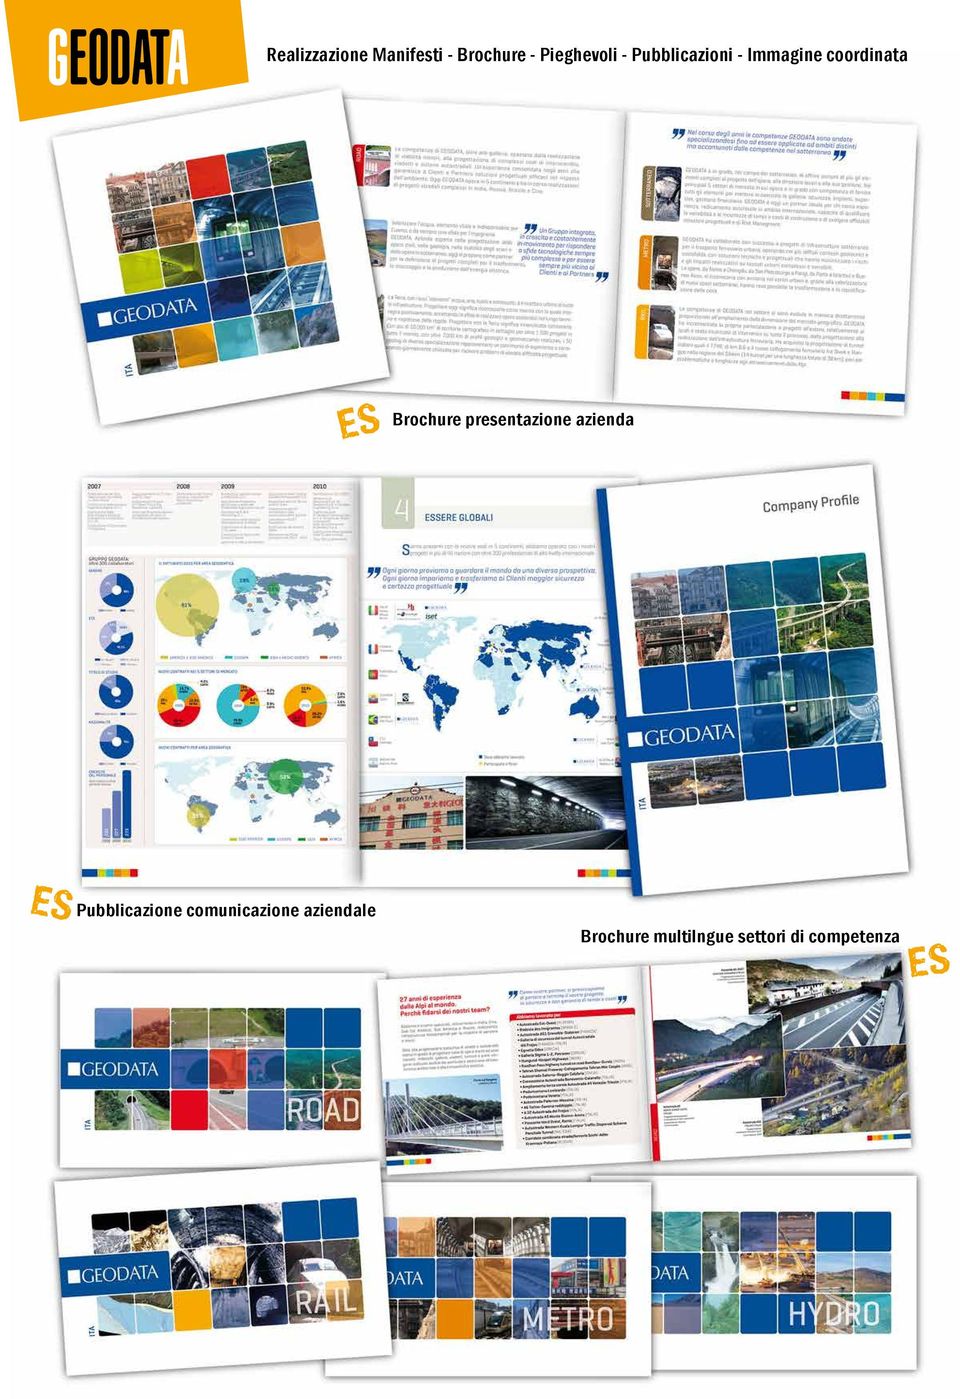 Brochure presentazione azienda Pubblicazione